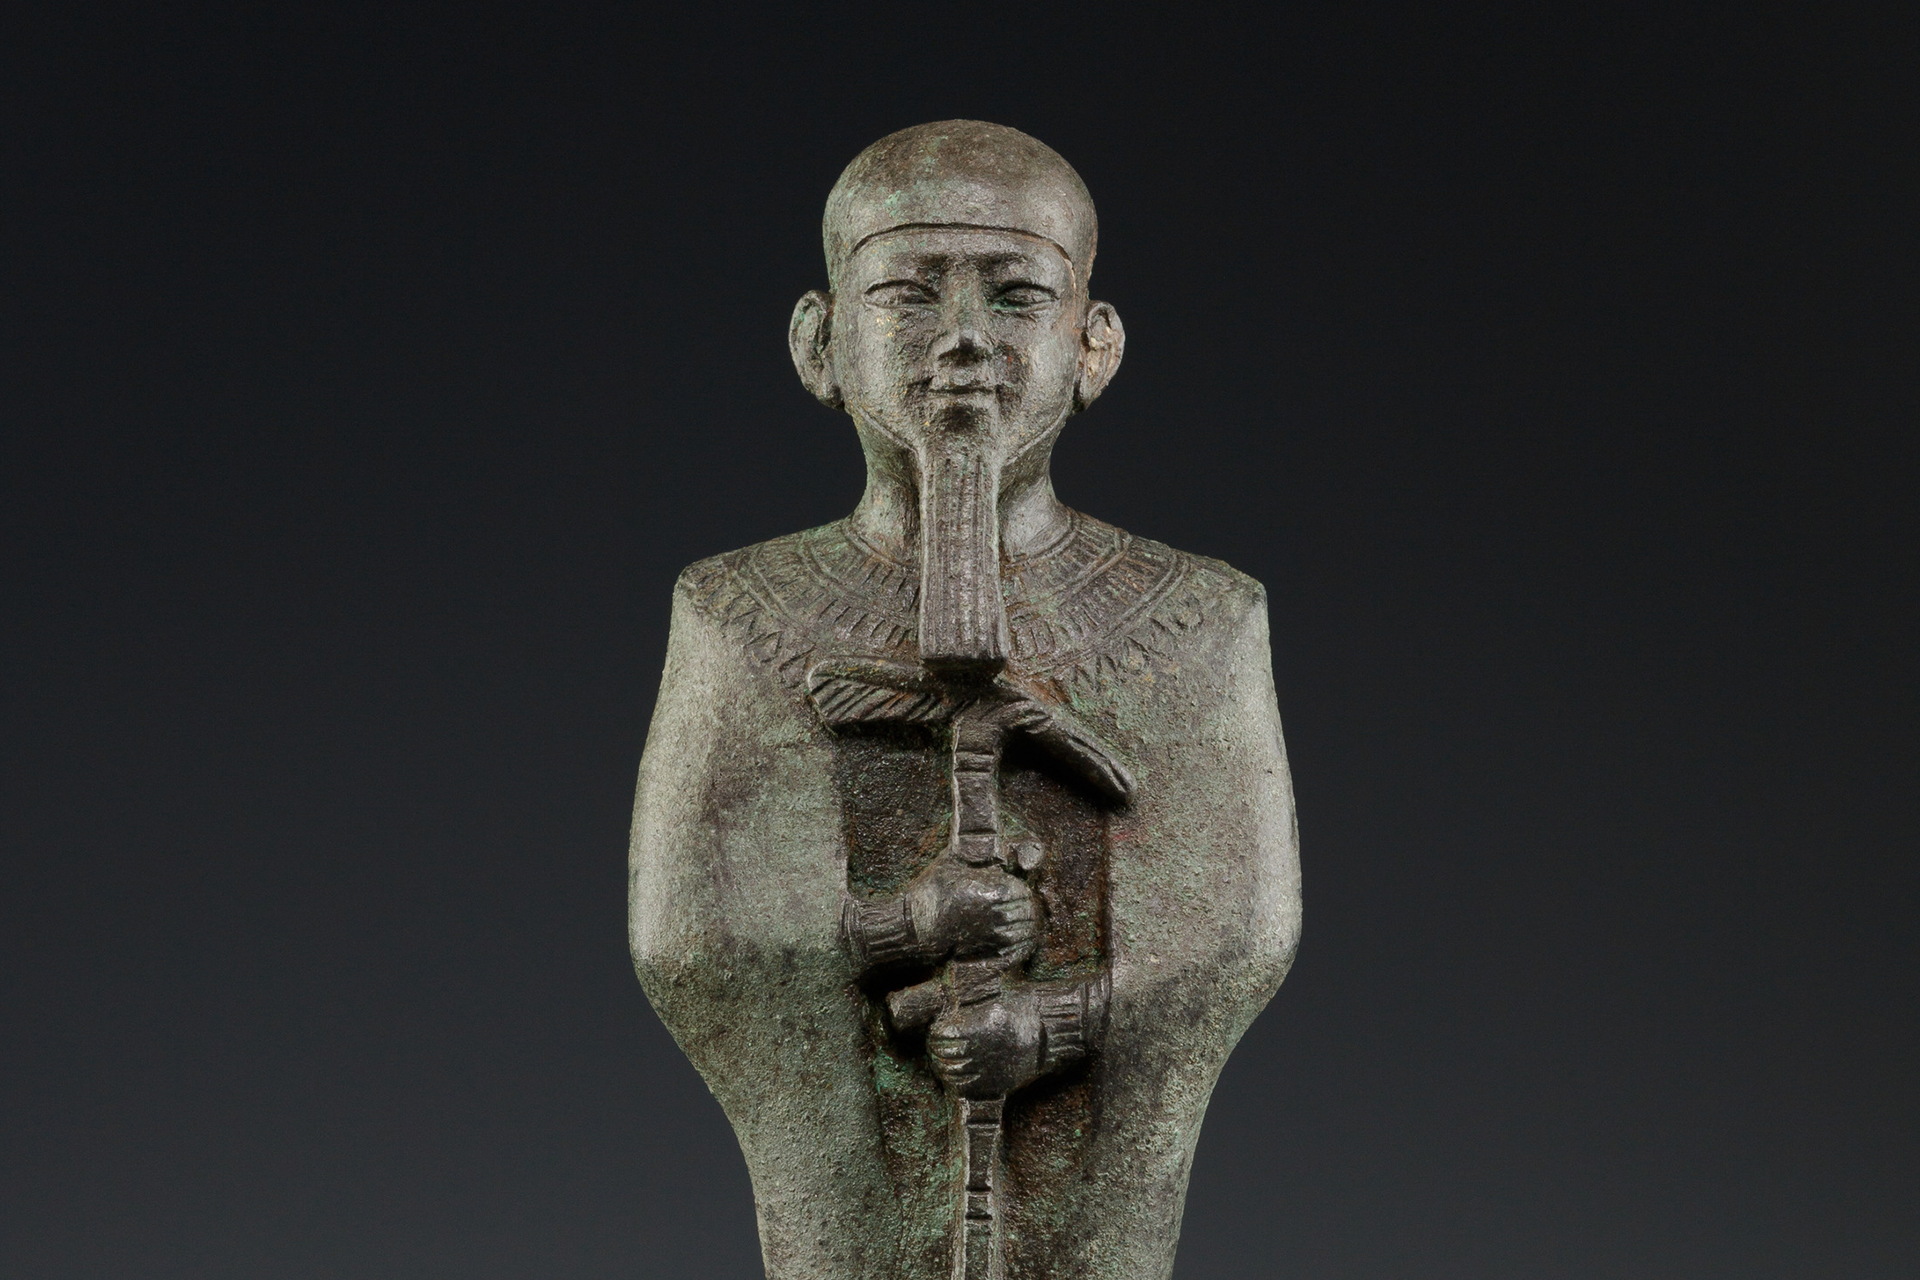 Ptah: ഈജിപ്തിന്റെ കരകൗശലത്തിന്റെയും സൃഷ്ടിയുടെയും ദൈവം